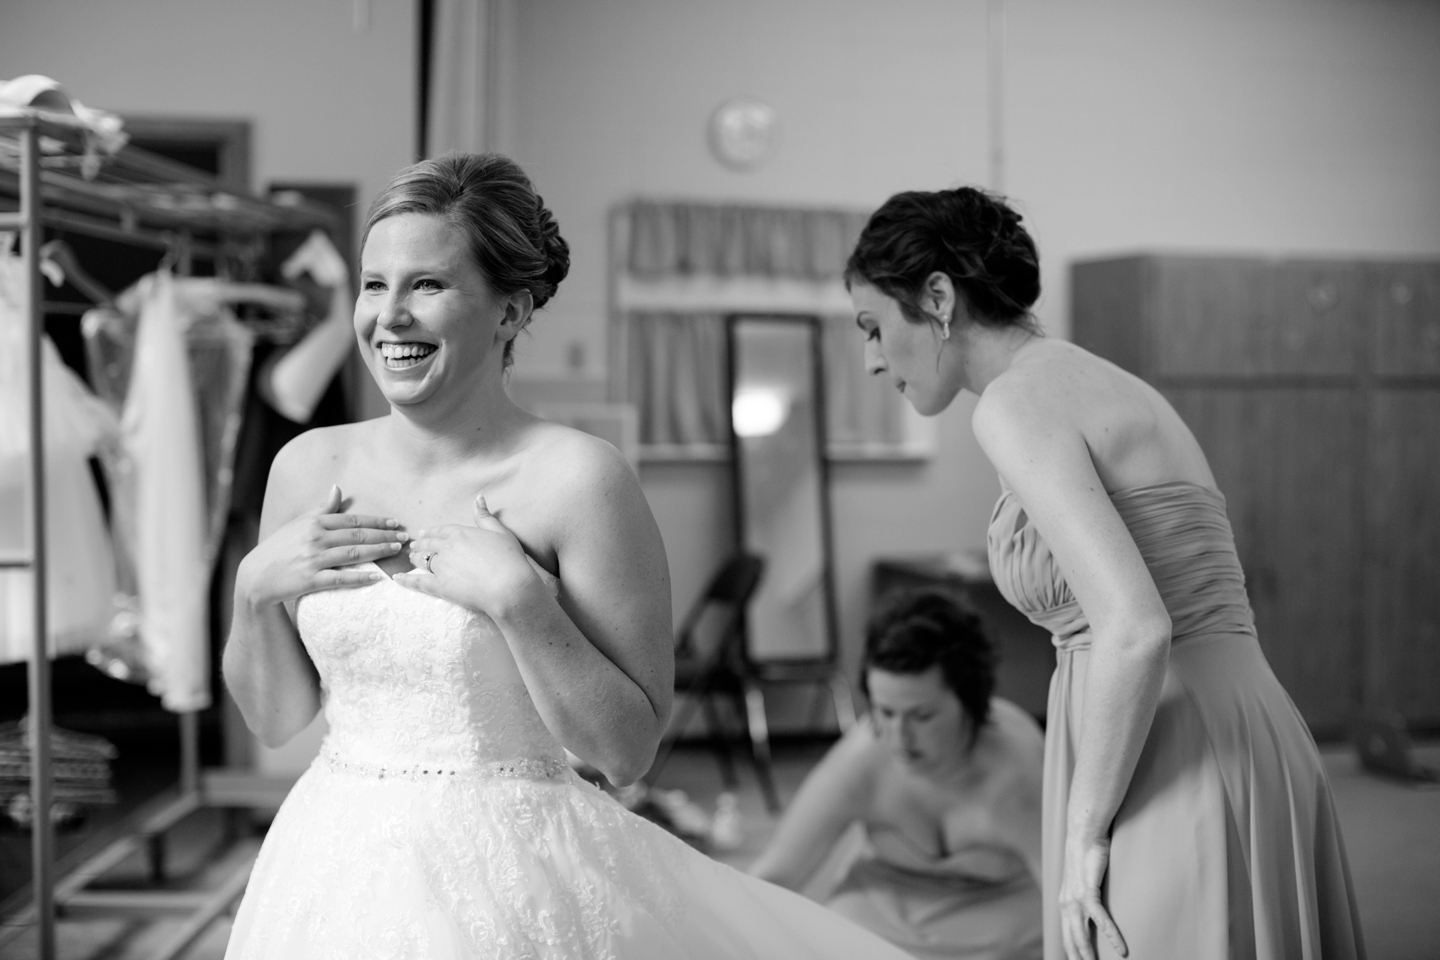 Jessica Lauren, Destination Wedding, Chicago Wedding Photographer